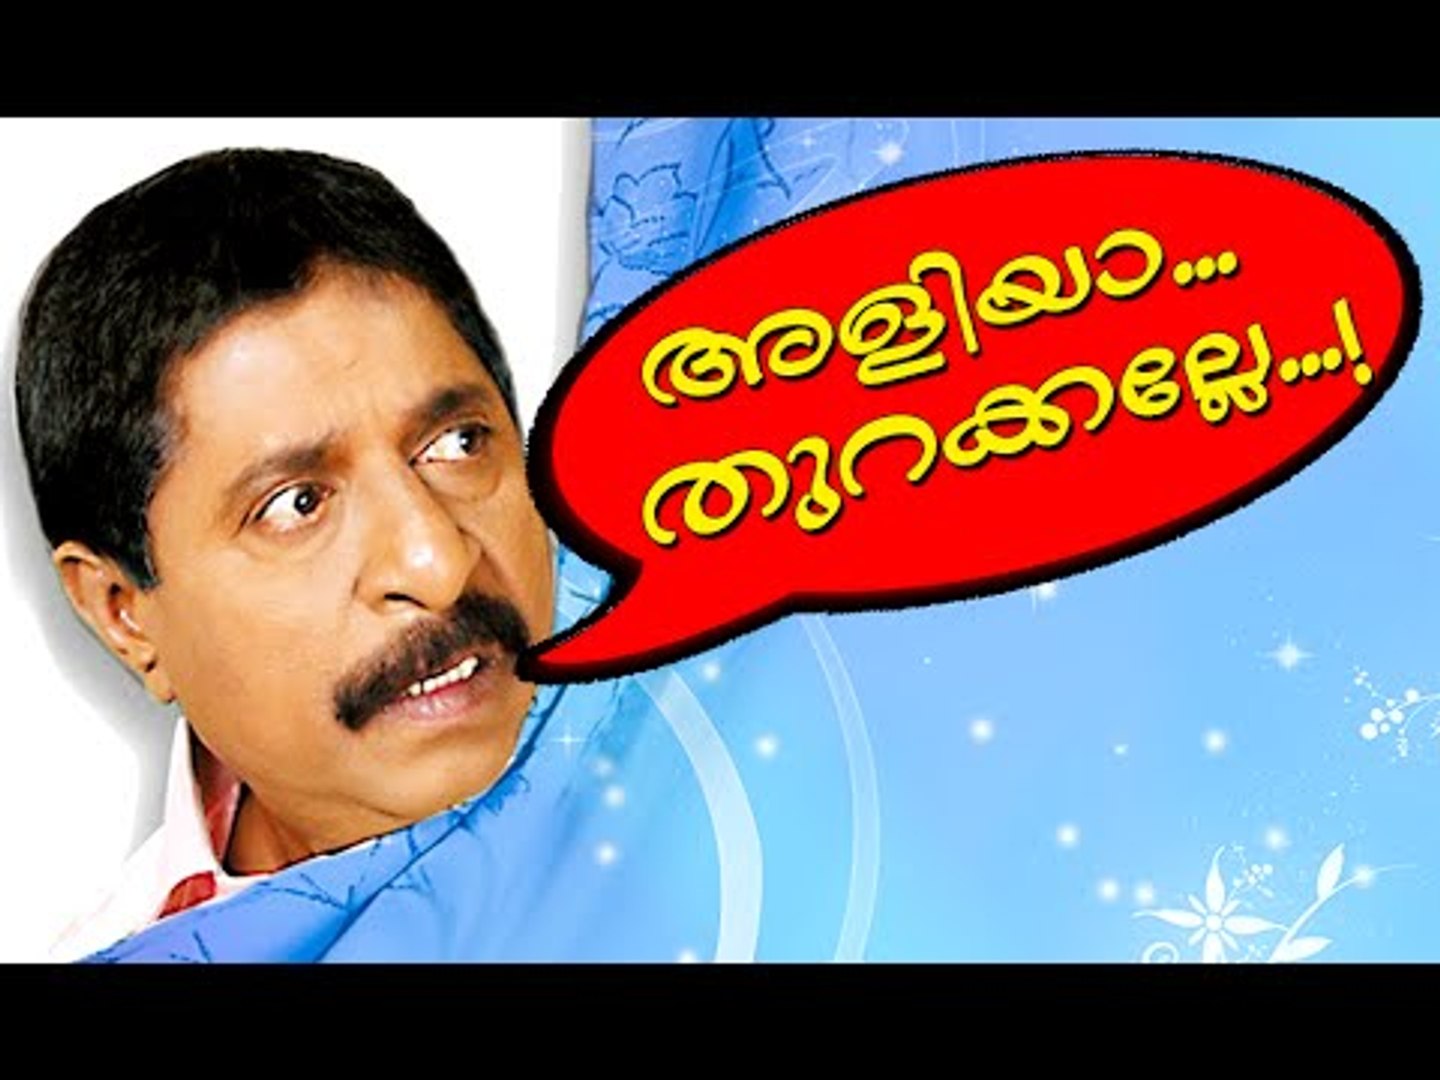 അളിയാ തുറക്കല്ലേ..... |  Malayalam Comedy Movies | Malayalam Comedy Scenes From Movies [HD}